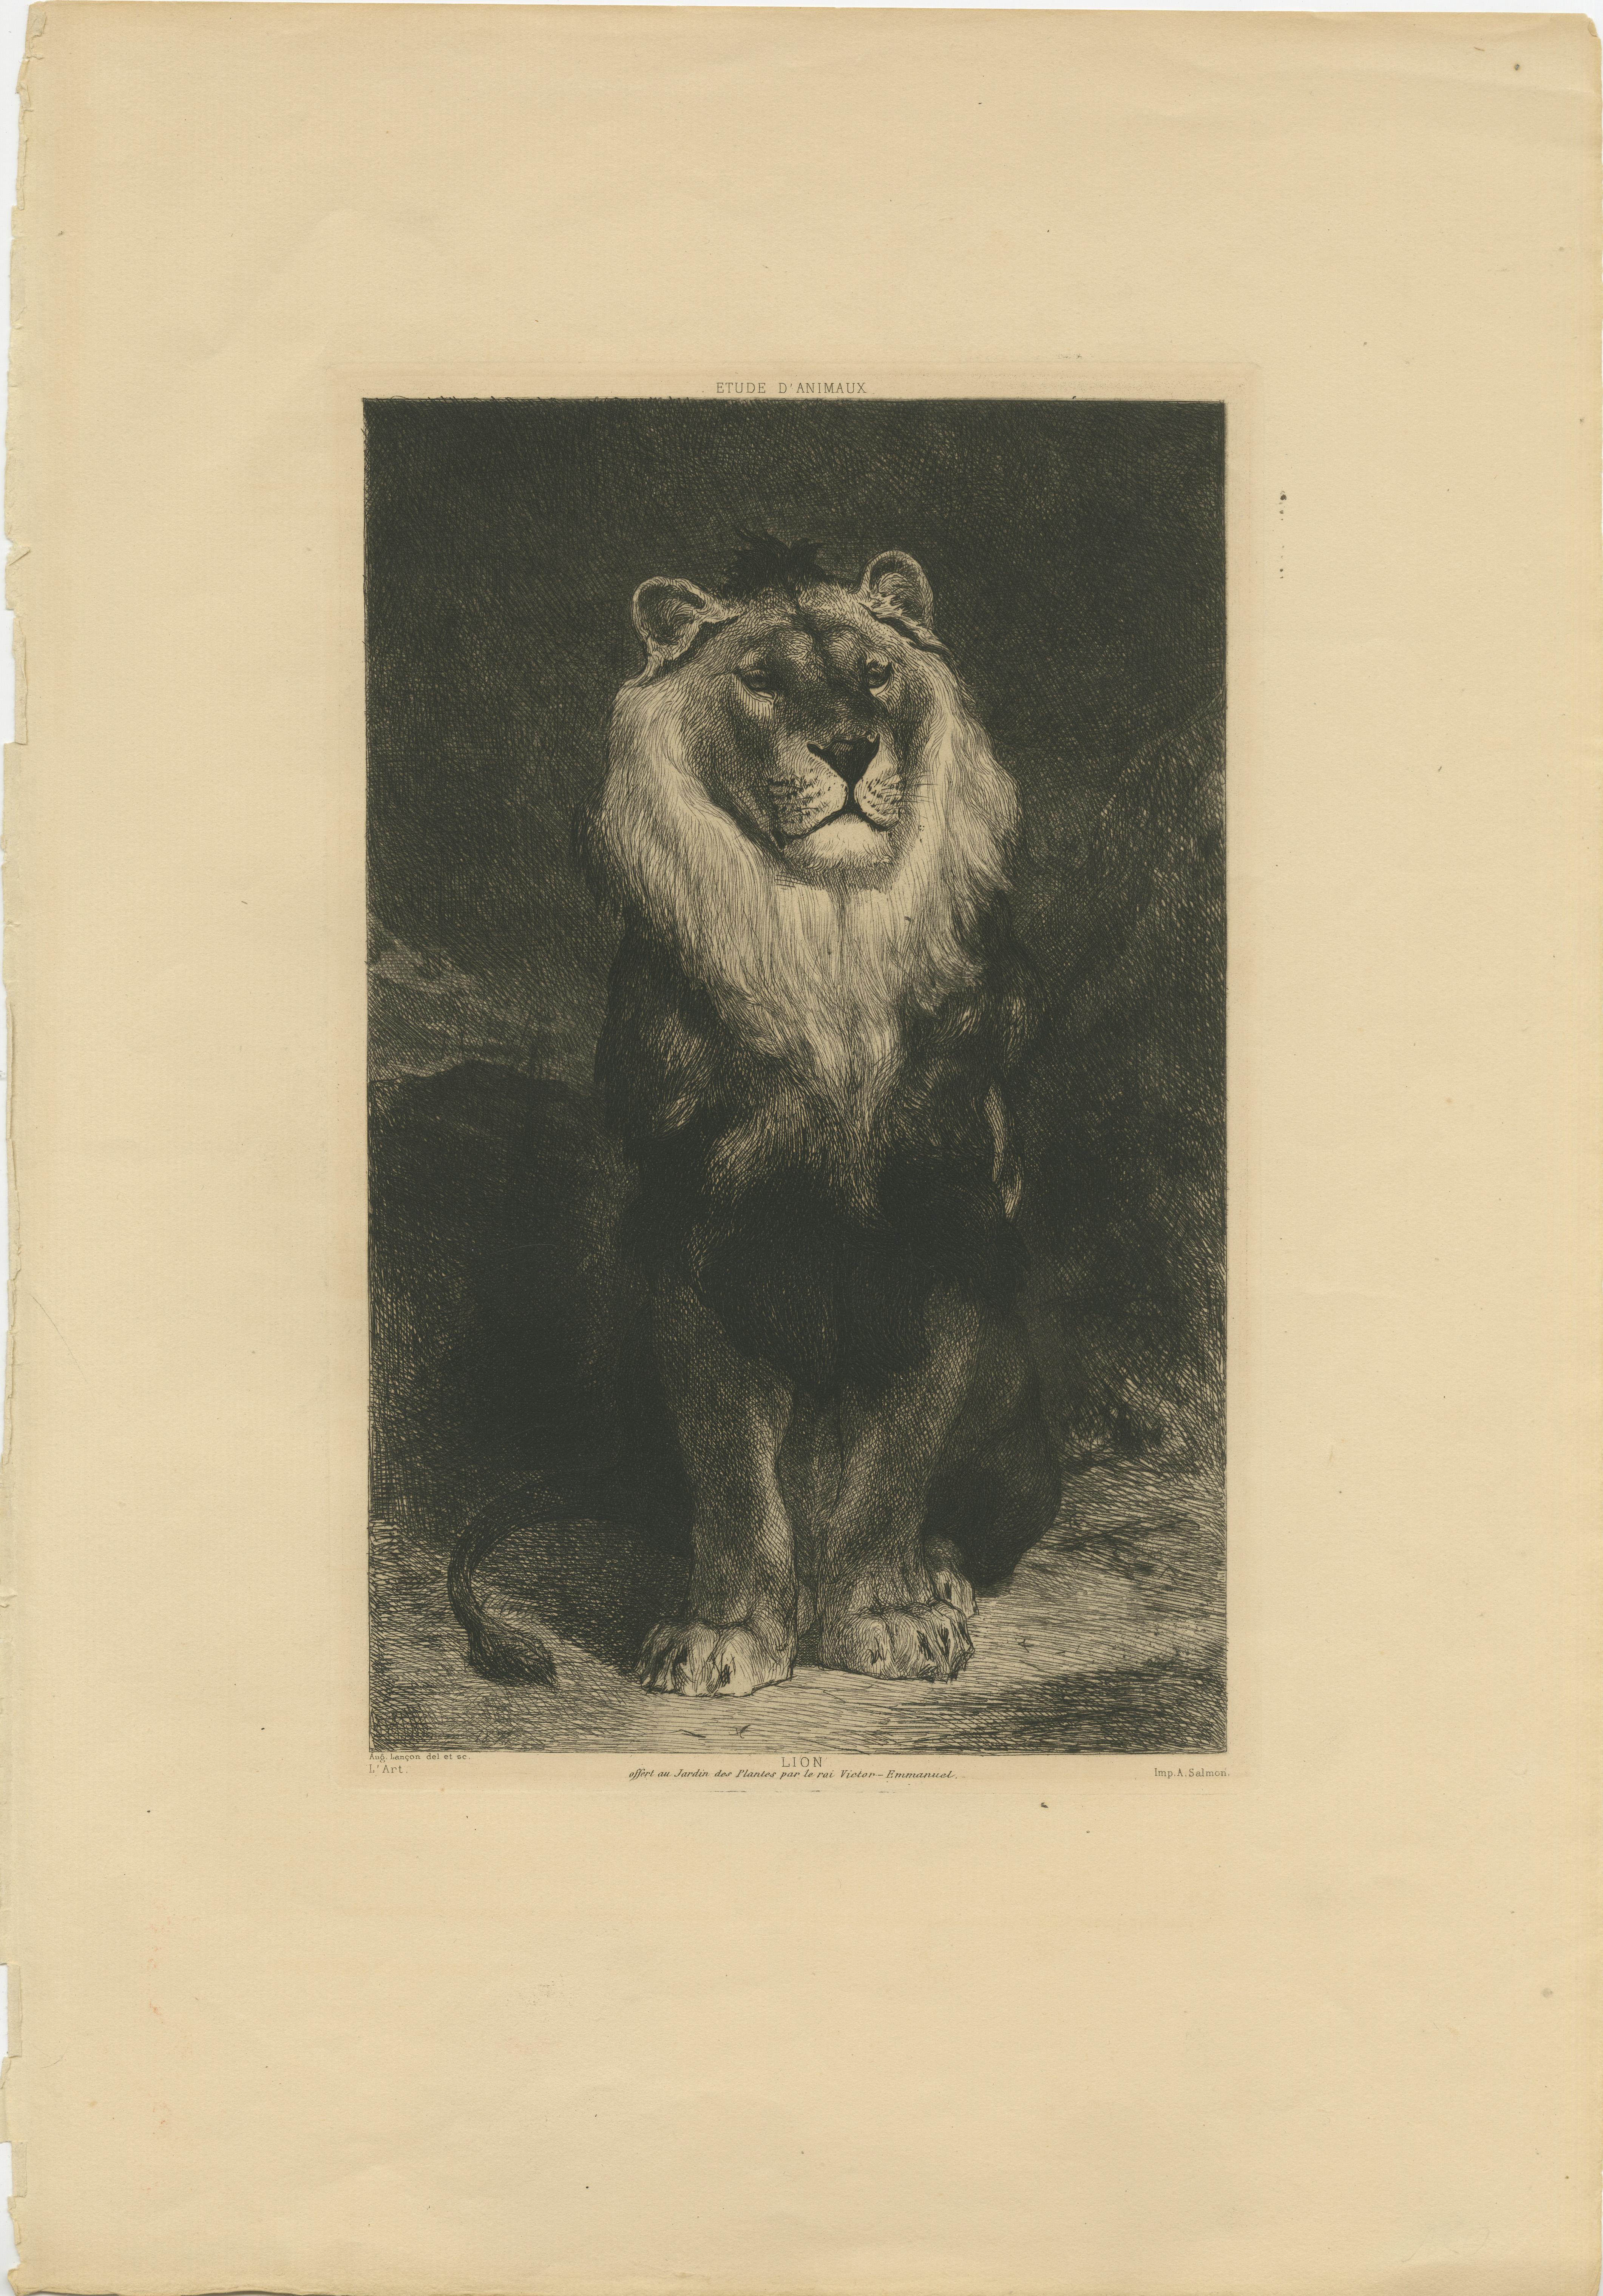 Original antique print titled 'Lion, offert au Jardin des Plantes par le rai Victor-Emmanuel'. Original antique print of a lion. Printed by A. Salmon after Aug. Lancon. Published circa 1875.